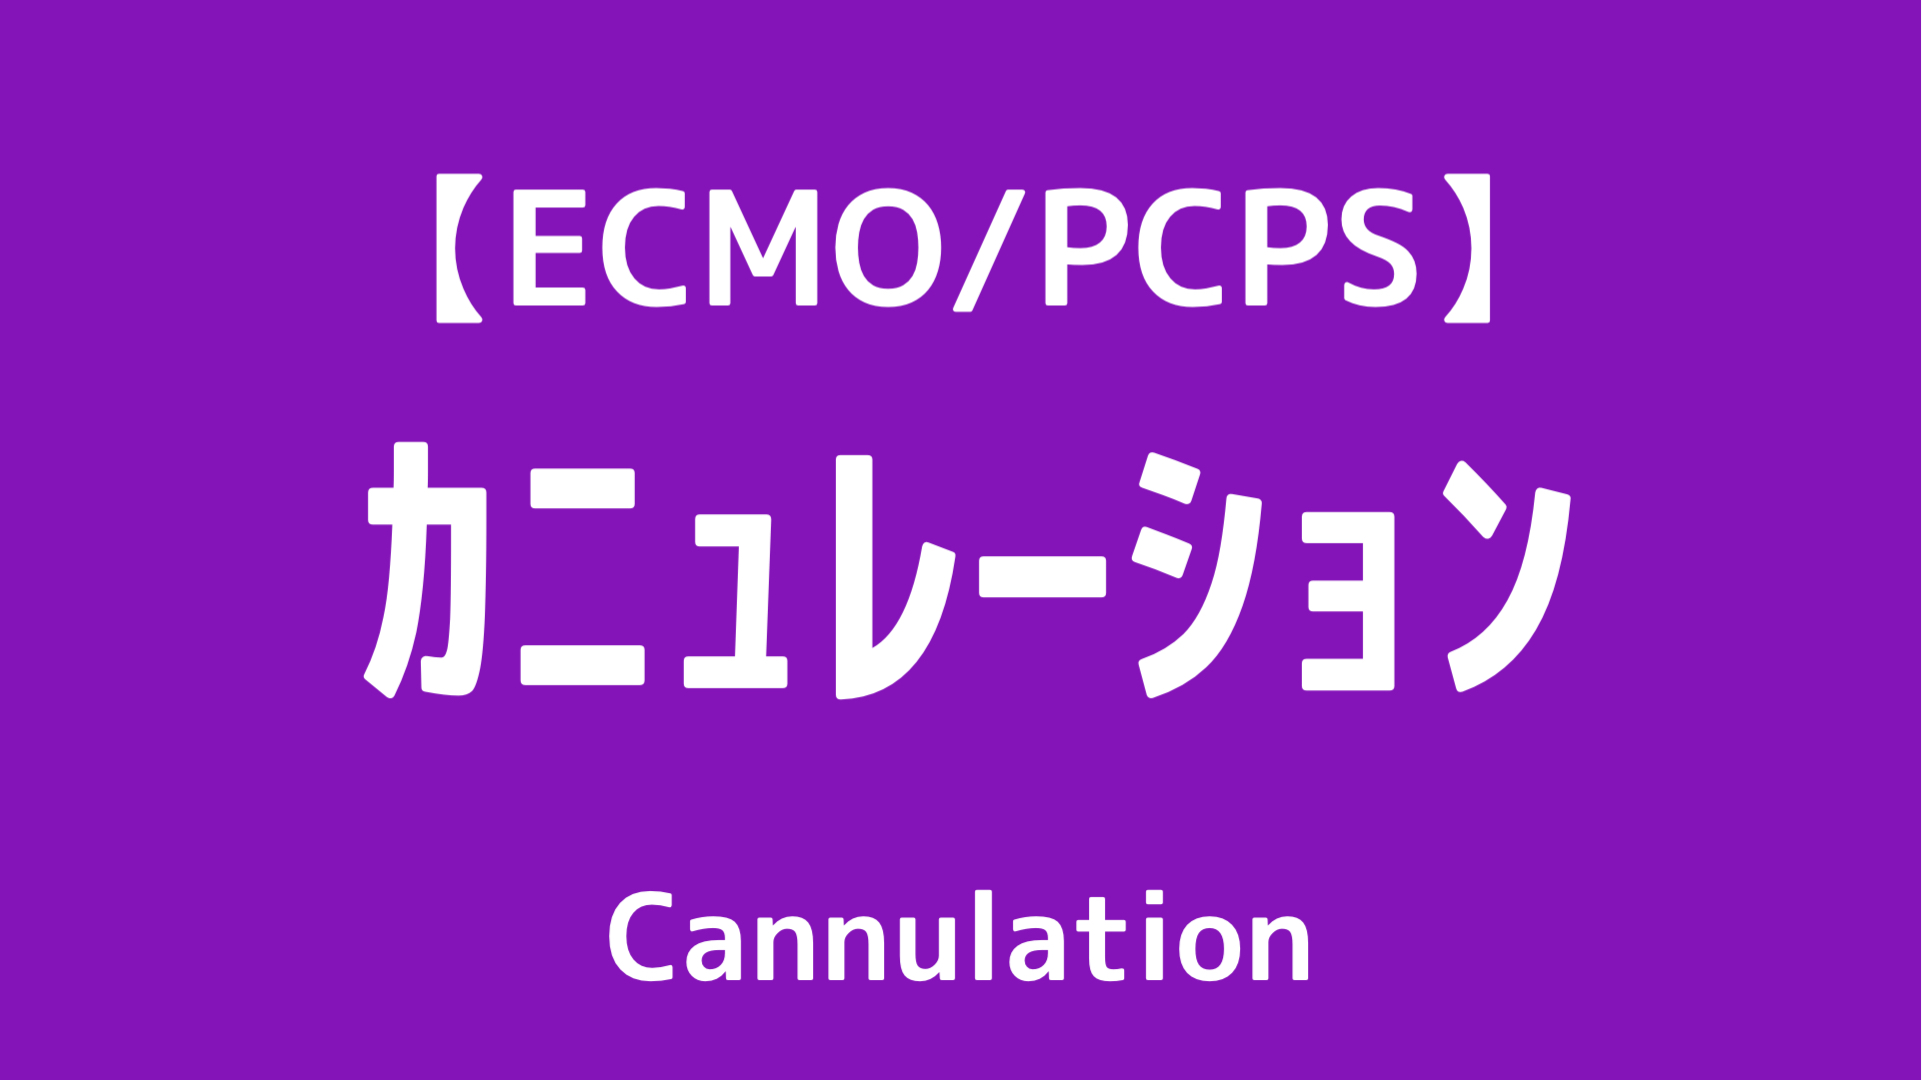 ECMO,PCPS